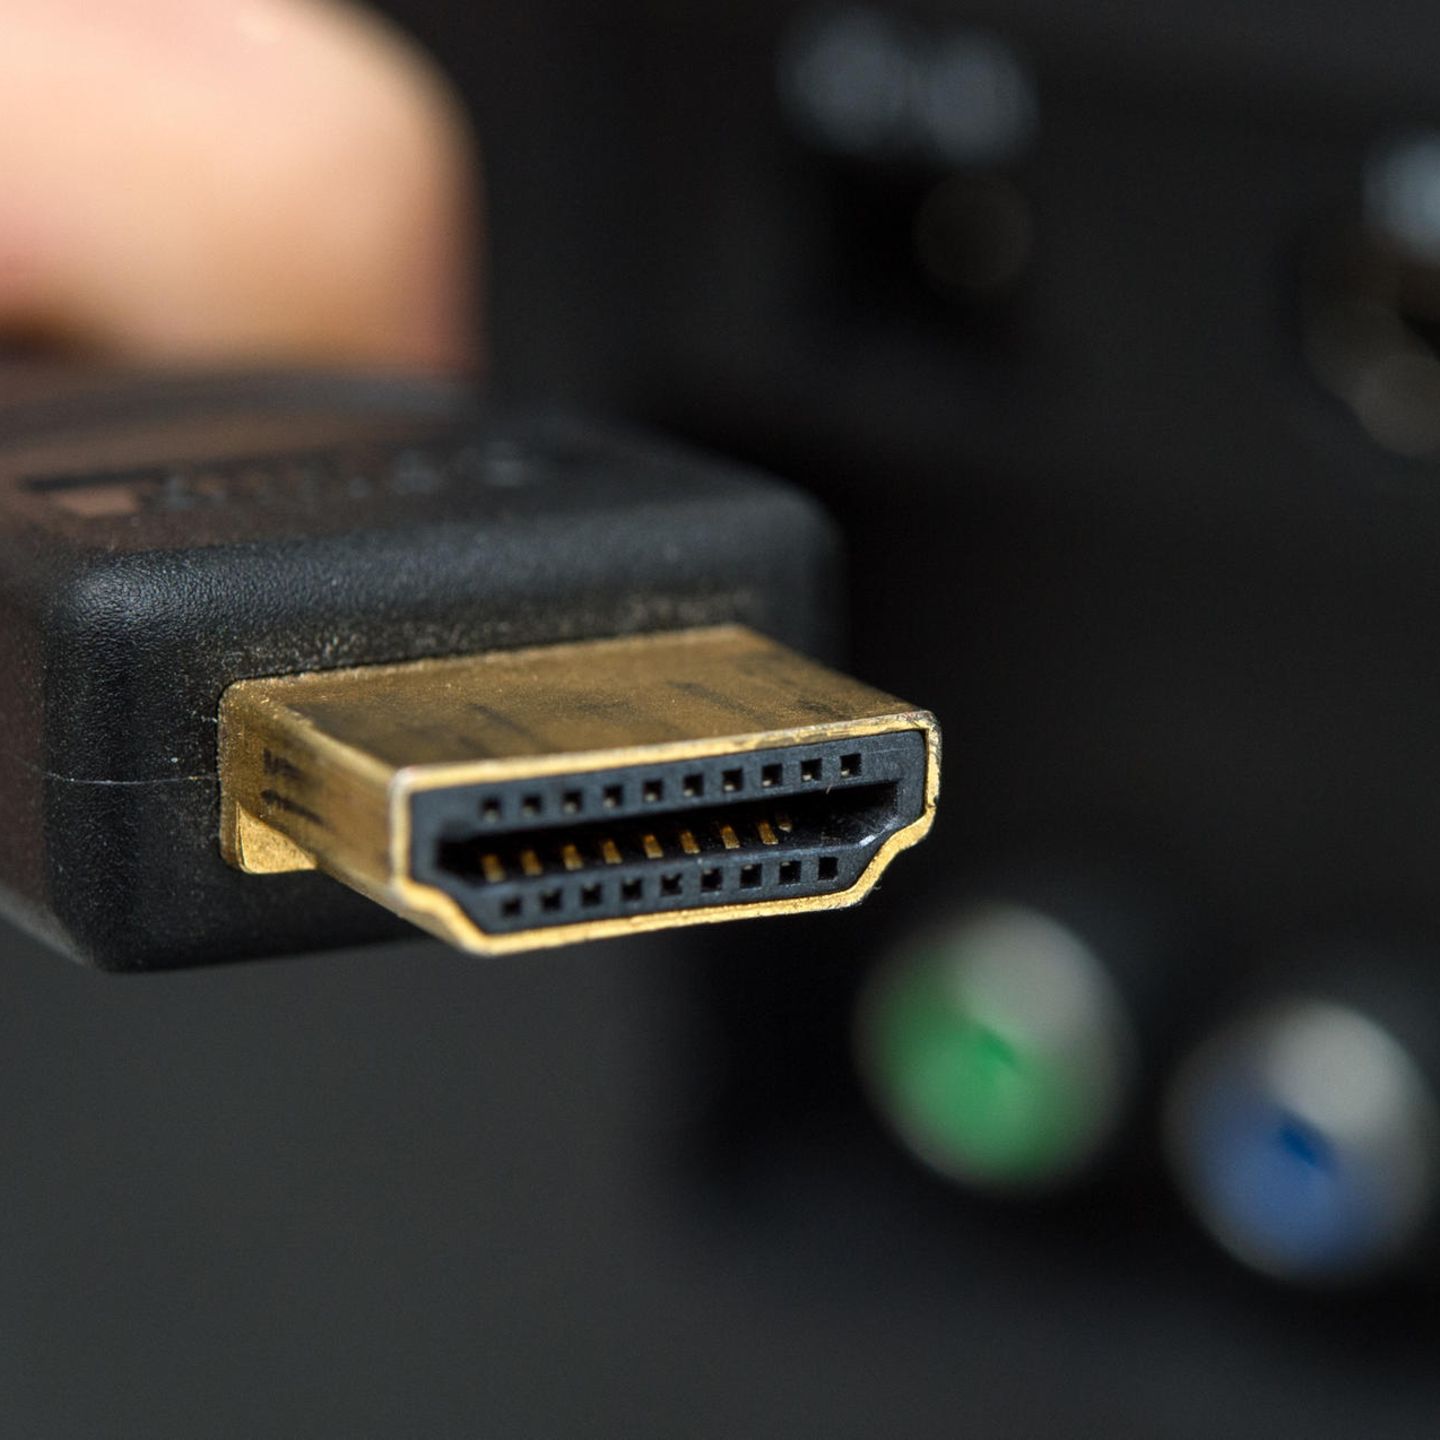 HDMI-Kabel: Sind teure Kabel wirklich besser? Ein Experte verrät's